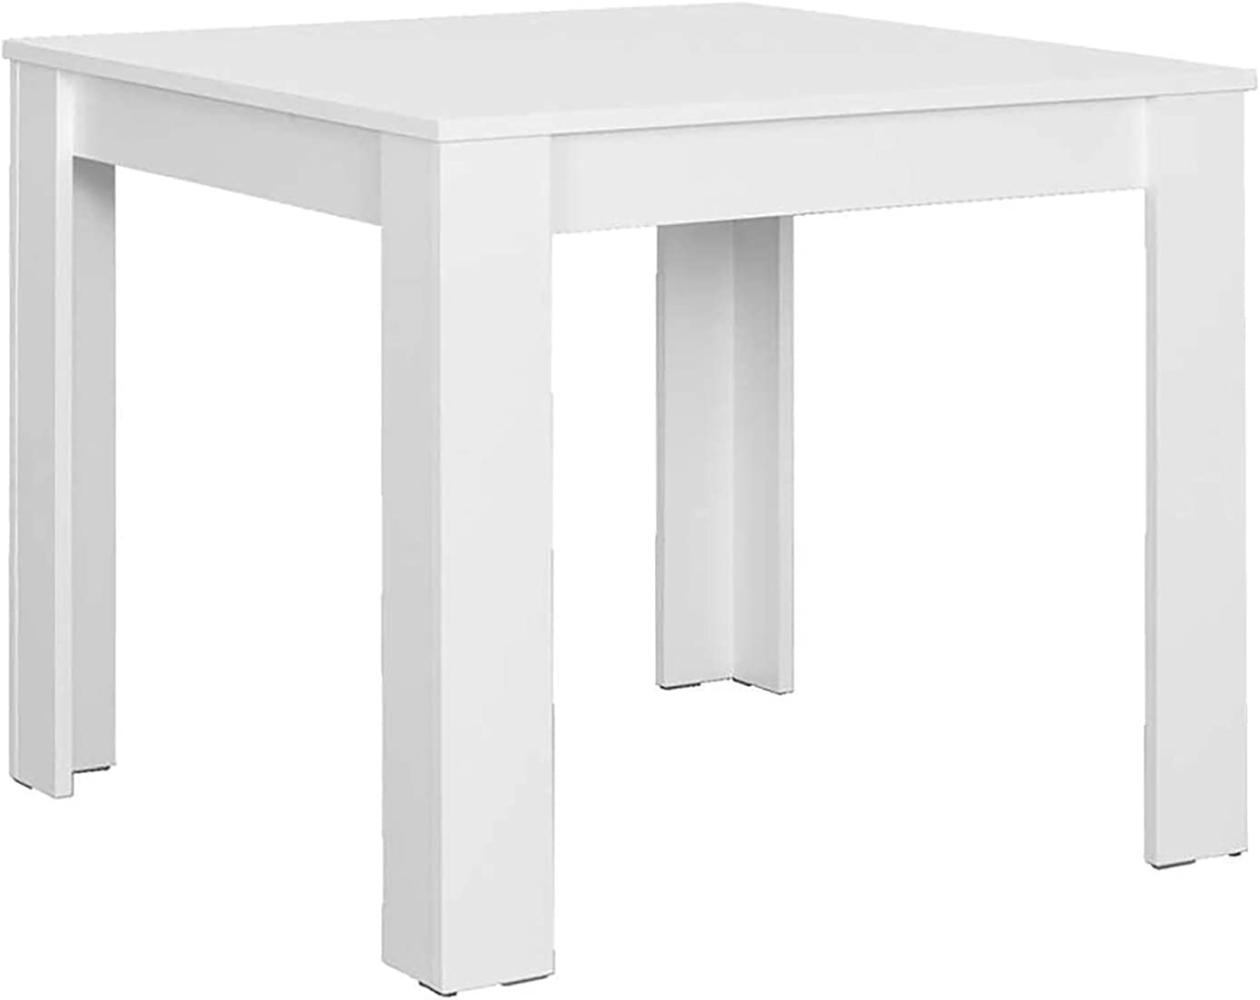 Tisch, Spanplatte, Weiß, 80 x 80 cm Bild 1